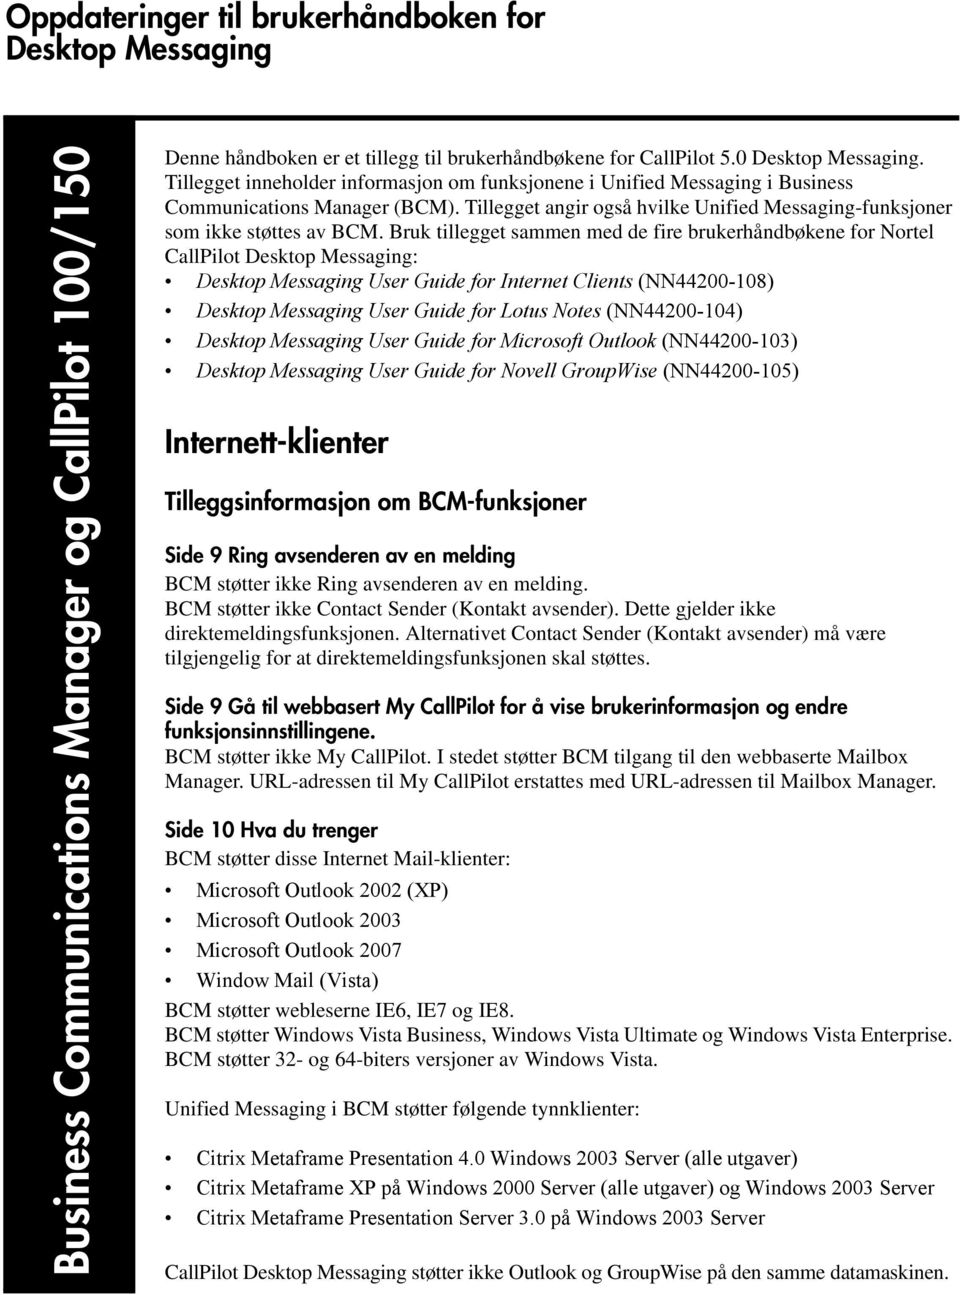 Bruk tillegget sammen med de fire brukerhåndbøkene for Nortel CallPilot Desktop Messaging: Desktop Messaging User Guide for Internet Clients (NN44200-108) Desktop Messaging User Guide for Lotus Notes